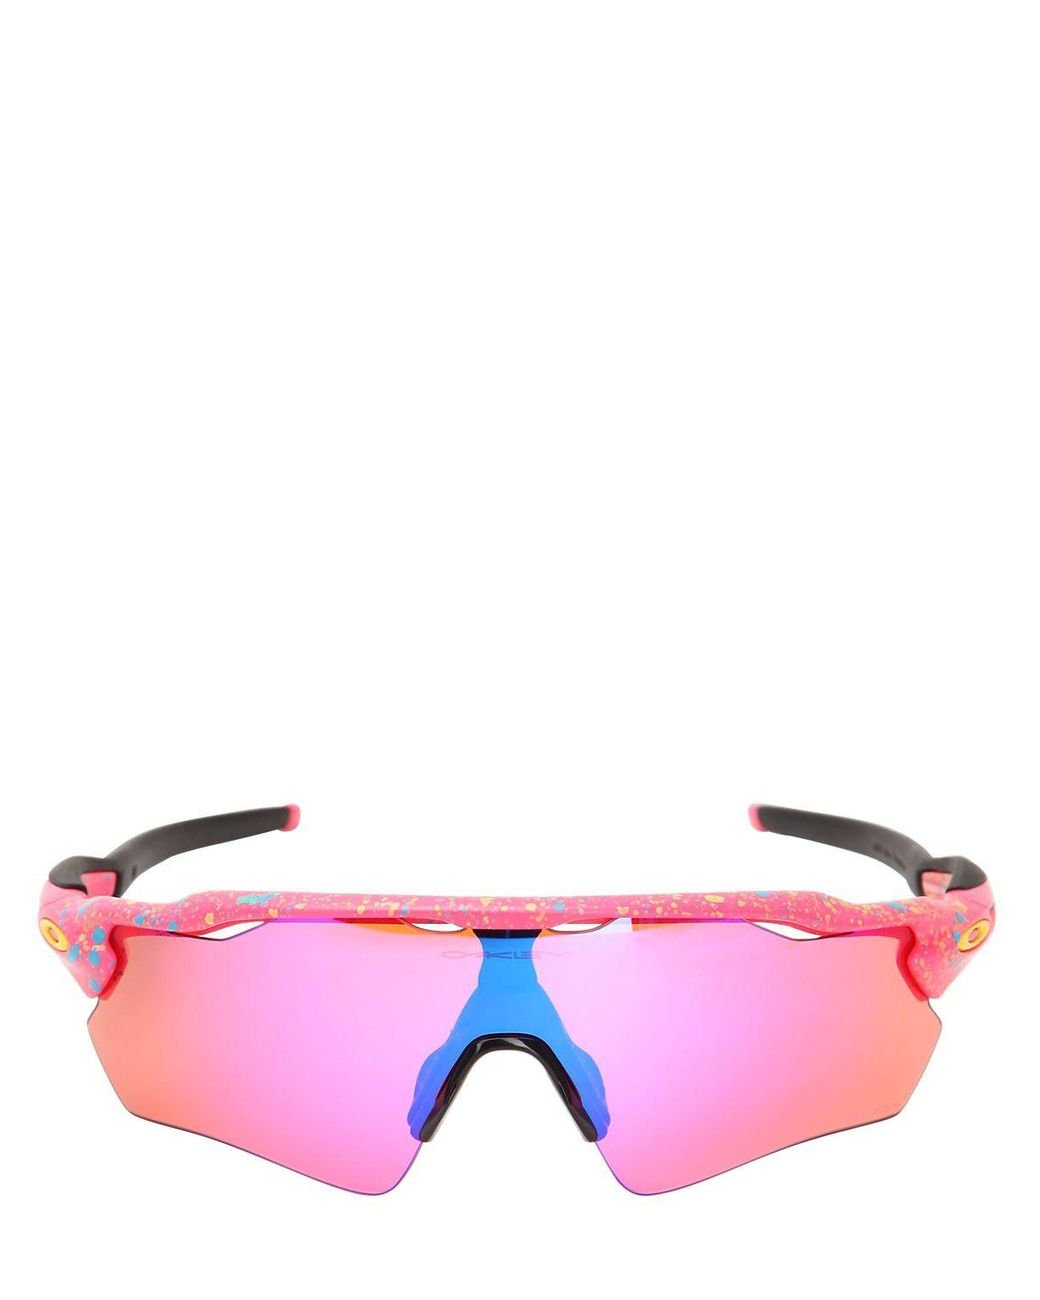 Oakley Radar Ev Path Limited Edition Sunglasses in Pink | Lyst Canada